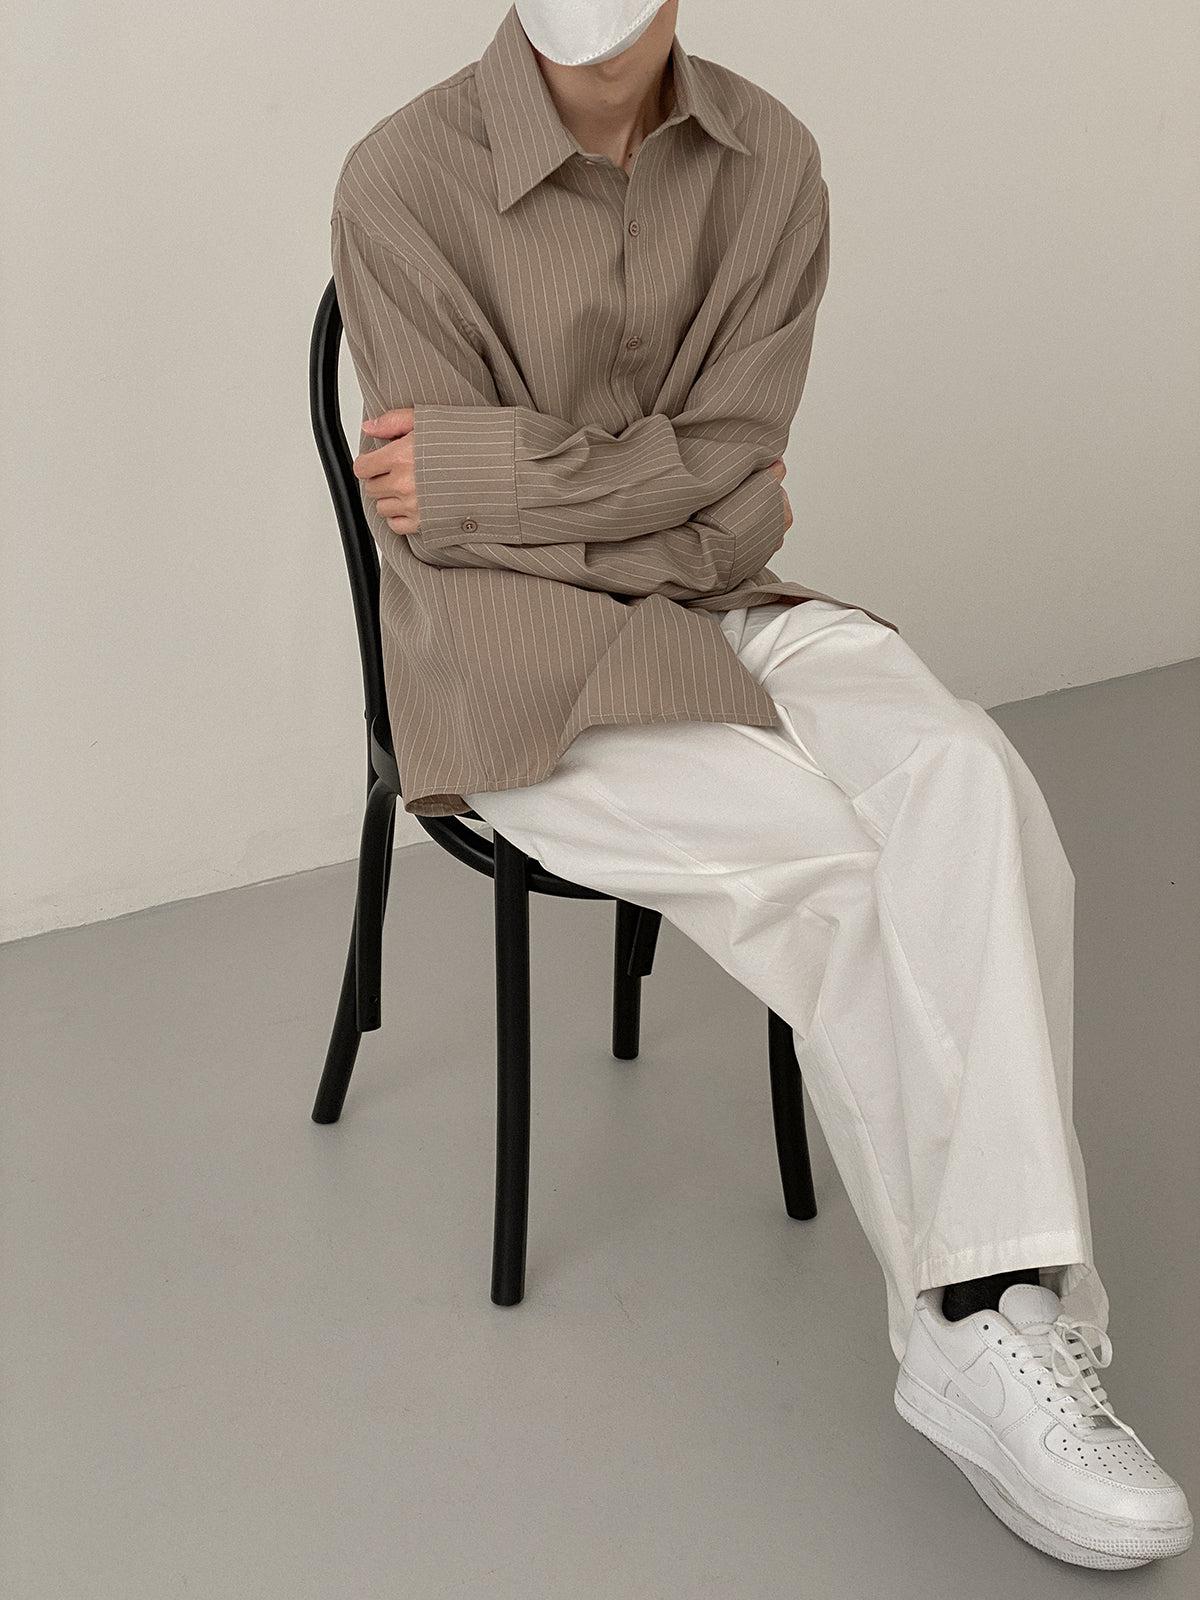 Zhou Broken Lines Long Sleeve Shirt-korean-fashion-Shirt-Zhou's Closet-OH Garments